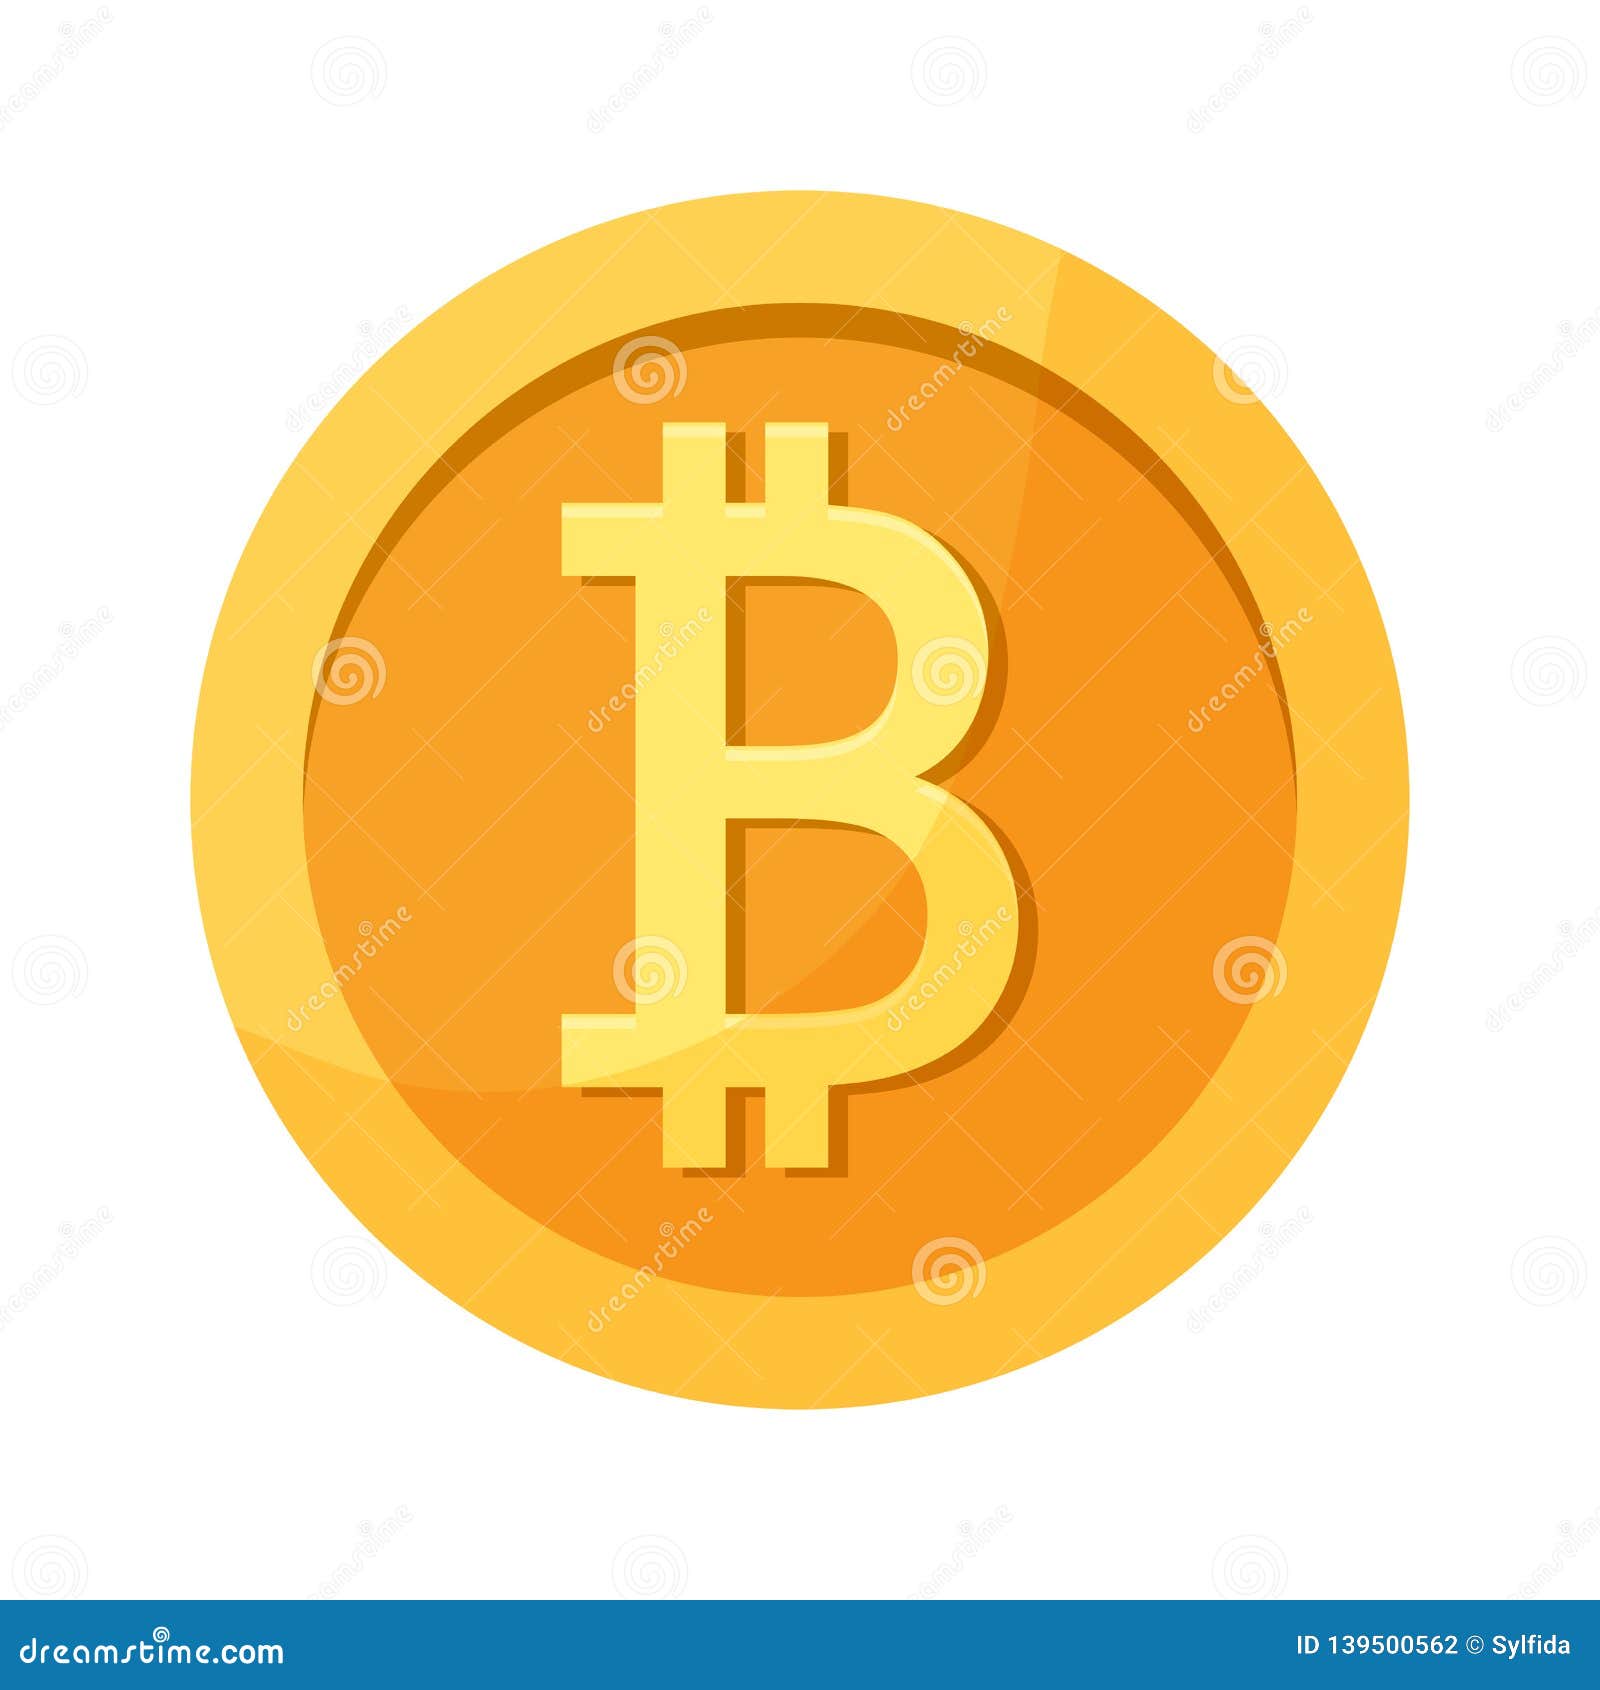 Gold Coin With Bitcoin Sign. Cartoon Vector ...